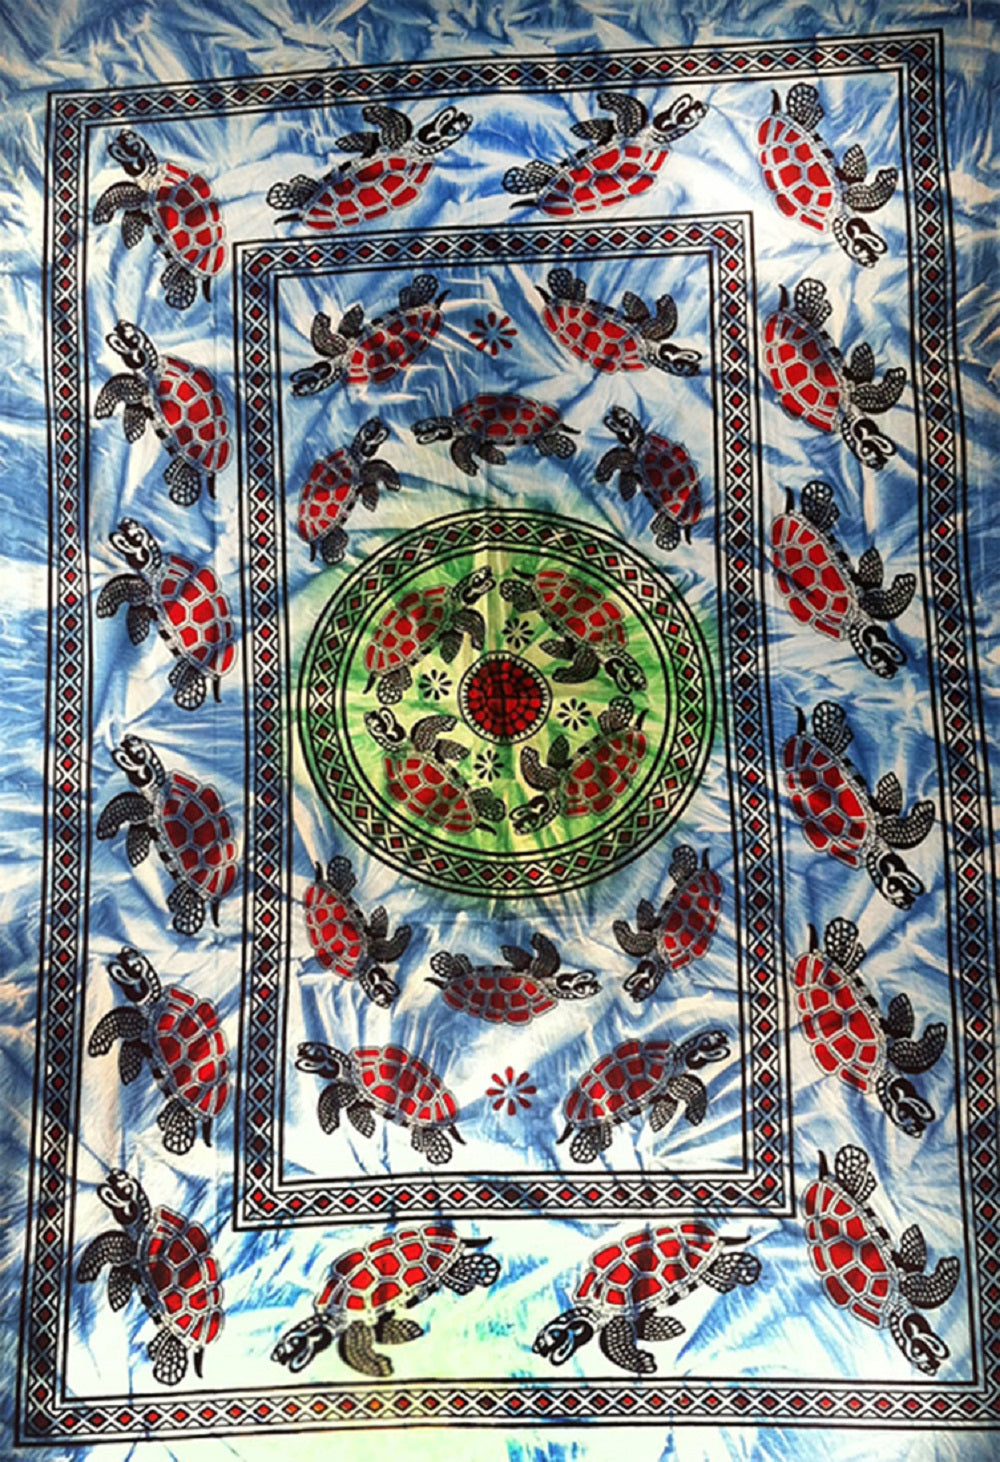 Tortoise Tapestry